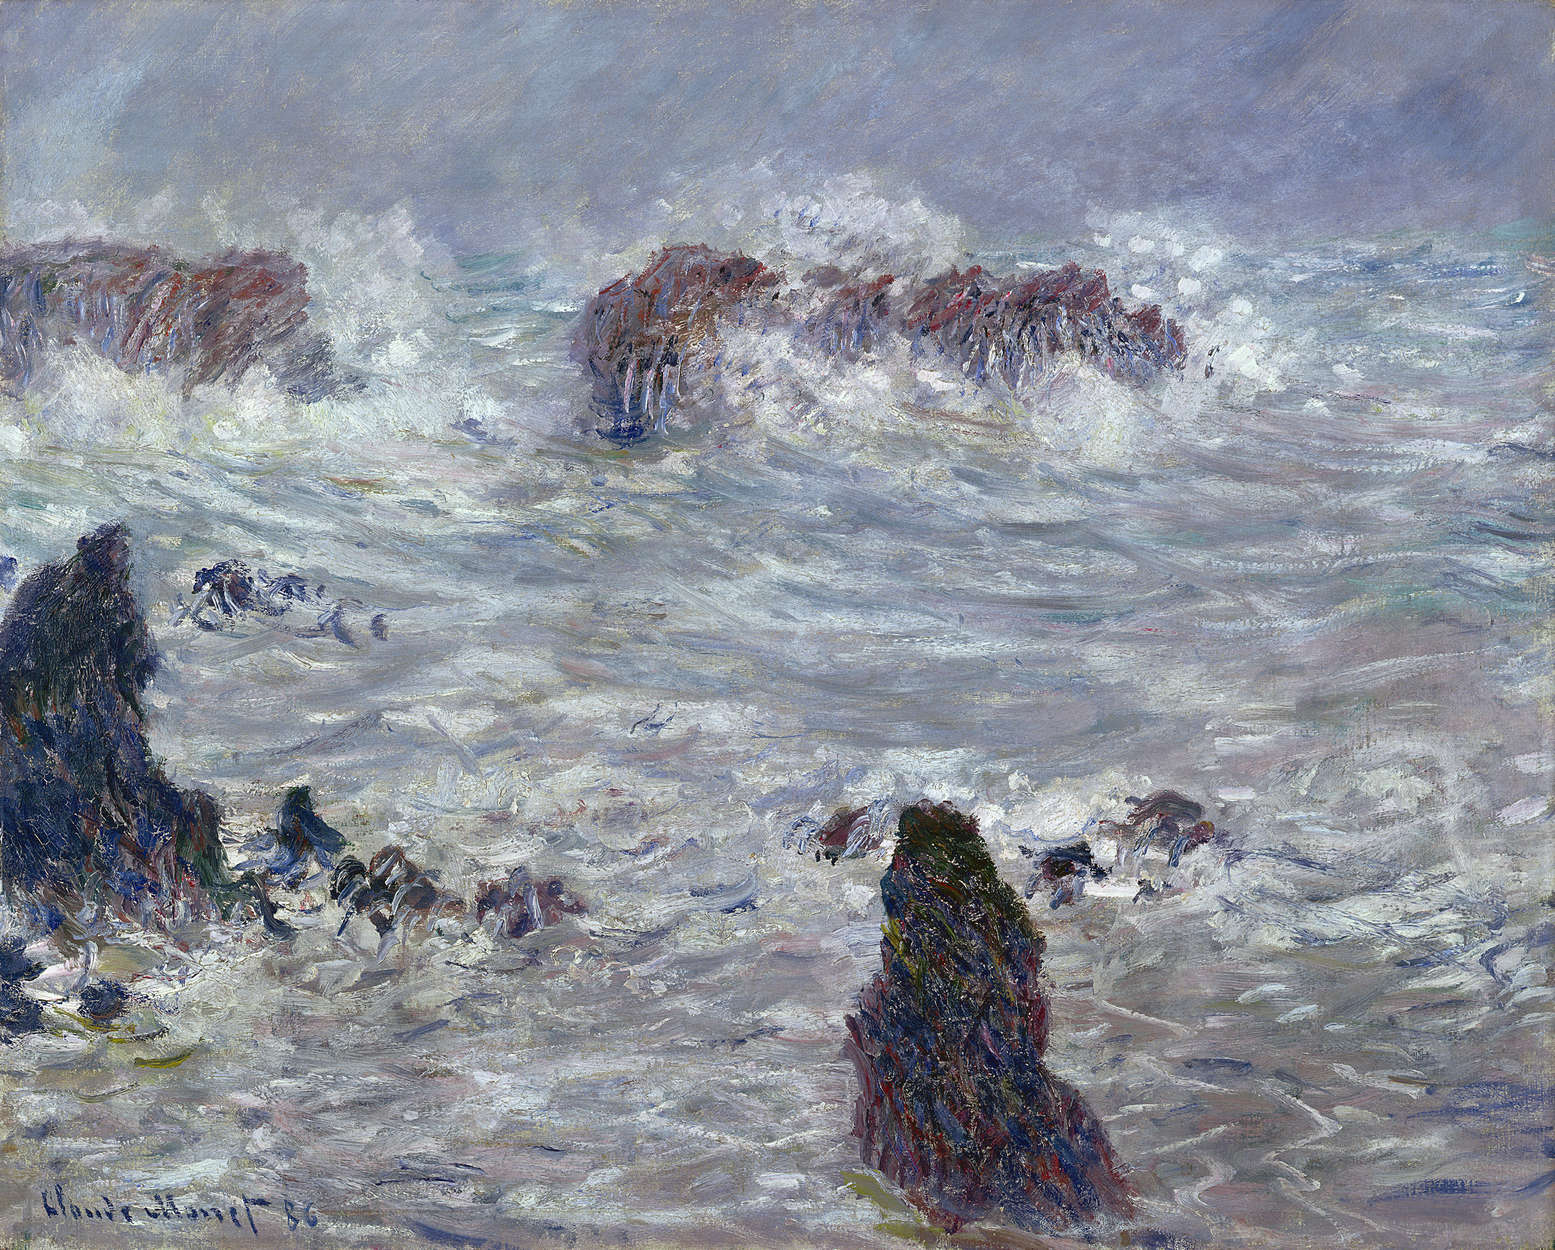             Fototapete "Sturm vor der Küste" von Claude Monet
        